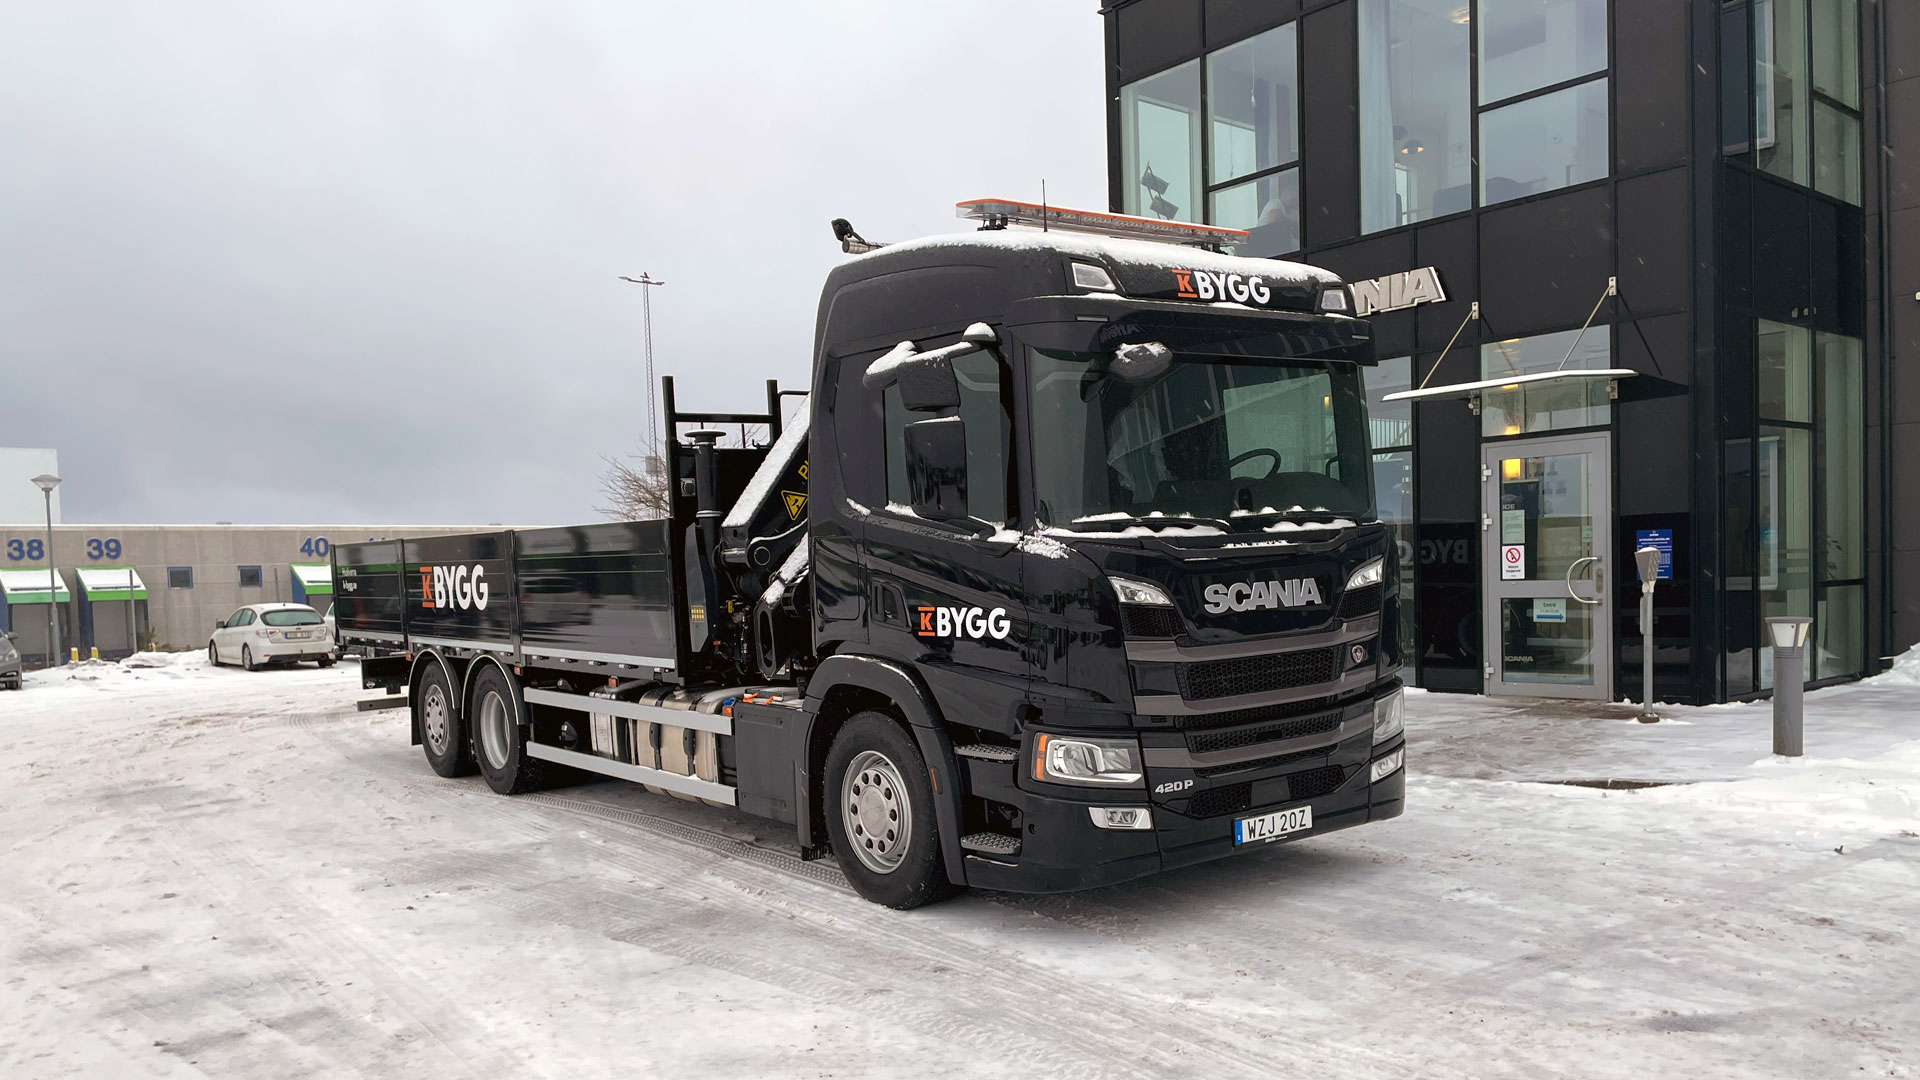 Scanialastbil P420 är levererad av Atteviks Lastbilar i Jönköping till K-Bygg i Huskvarna.